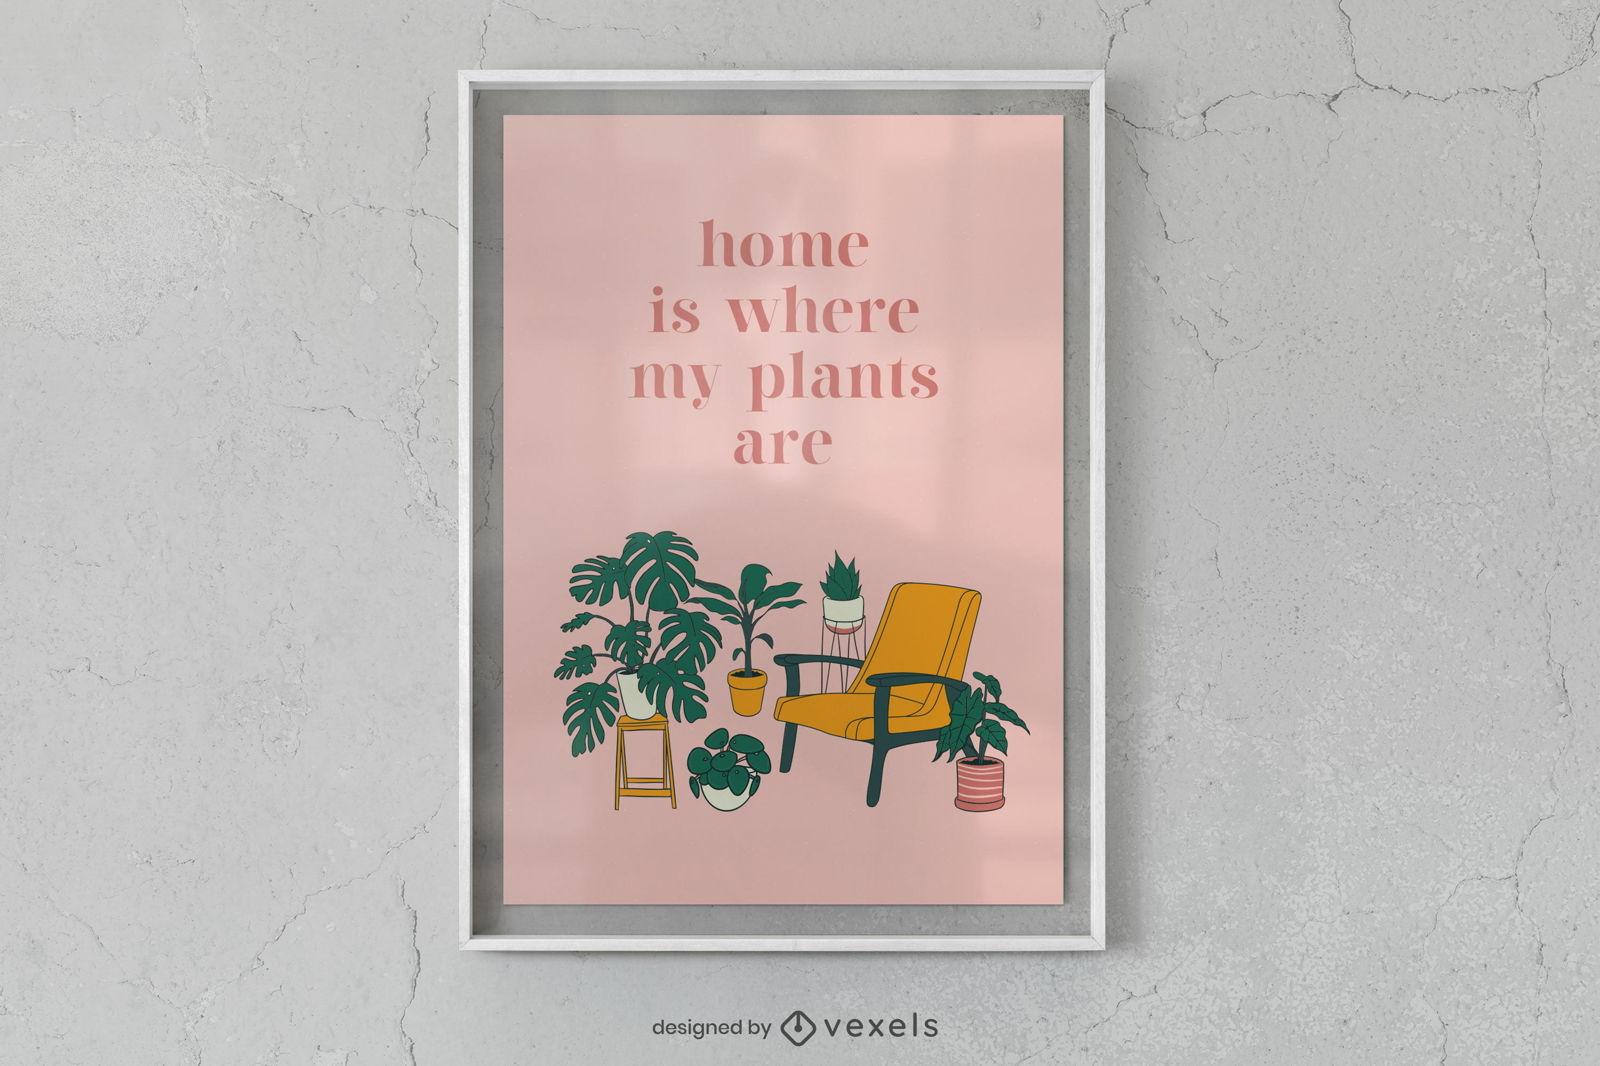 El hogar es donde est?n mis plantas, dise?o de carteles.